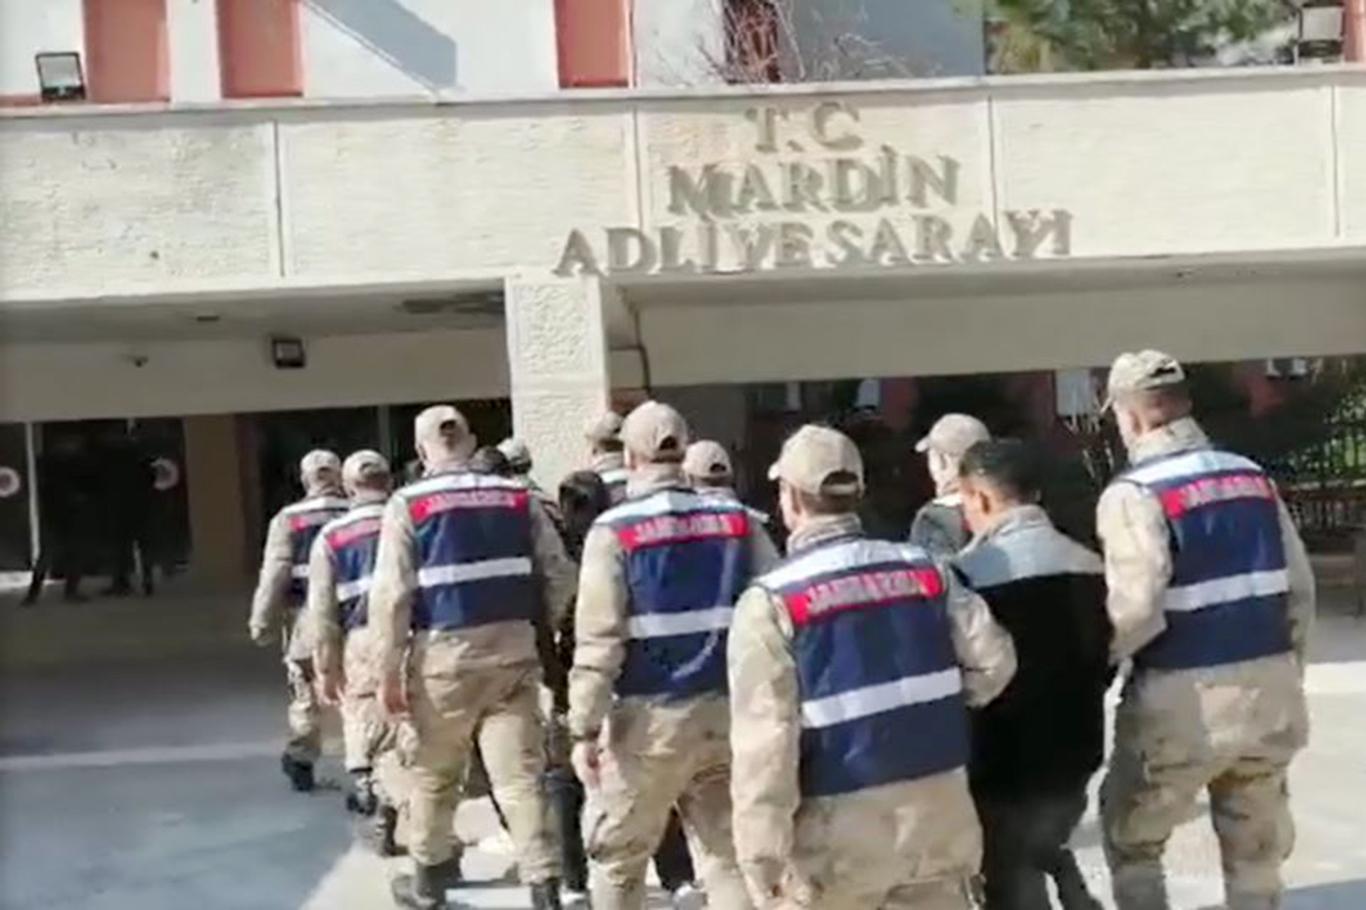 Mardin’de Suriye'den kaçak yollarla girerken yakalanan PYD/PKK’li 5 kişi tutuklandı